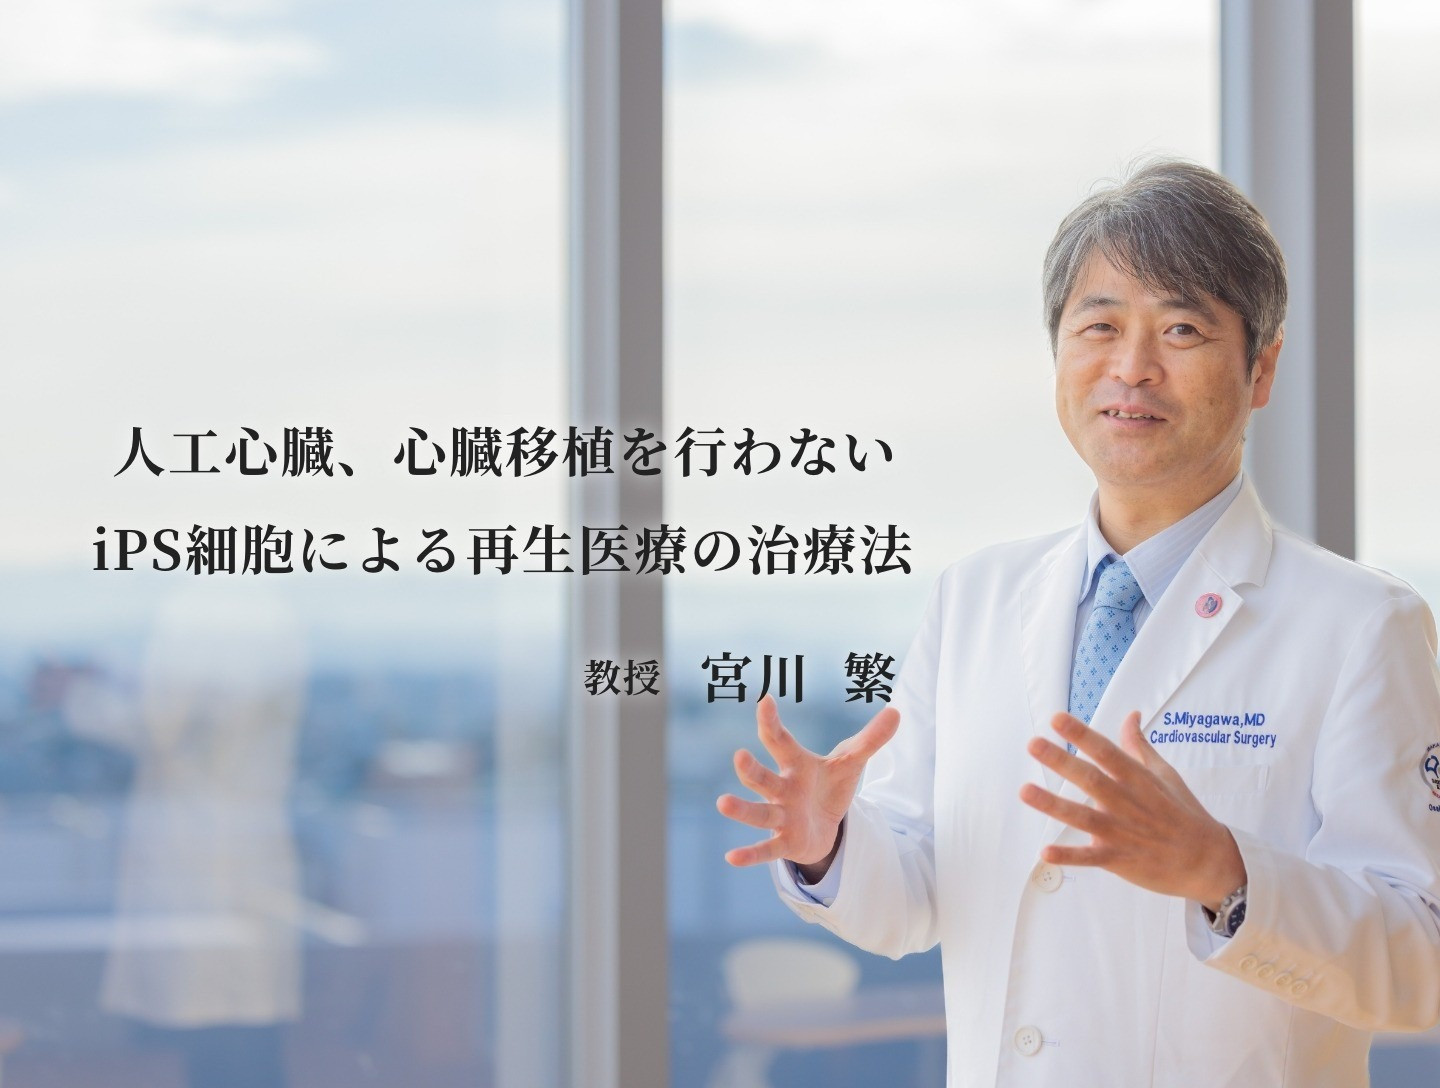 【公式】大阪大学心臓血管外科ホームページ